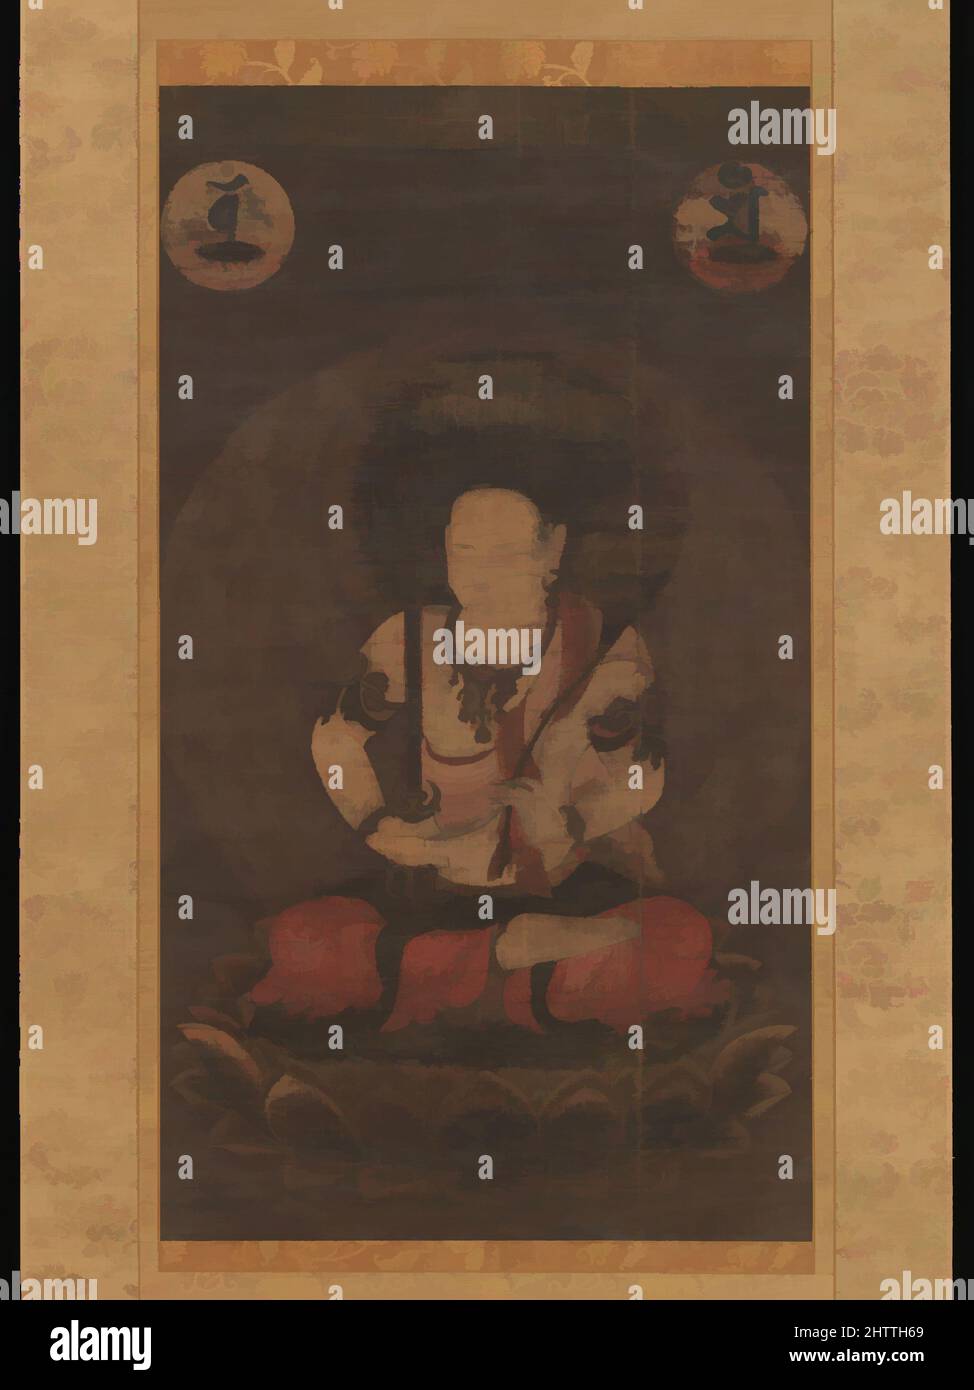 Arte ispirata al Bodhisattva Manjushri (Monju Bosatsu), 文殊菩薩像, periodo Kamakura (1185–1333), 13th secolo, Giappone, Rotolo sospeso; inchiostro e colore su seta, 36 3/4 x 20 3/4 pollici (93,4 x 52,7 cm), dipinti, la bodhisattva Manjushri conserva i suoi attributi identificativi, spada e sutra, e opere classiche modernizzate da Artotop con un tuffo di modernità. Forme, colore e valore, impatto visivo accattivante sulle emozioni artistiche attraverso la libertà delle opere d'arte in modo contemporaneo. Un messaggio senza tempo che persegue una nuova direzione selvaggiamente creativa. Artisti che si rivolgono al supporto digitale e creano l'NFT Artotop Foto Stock